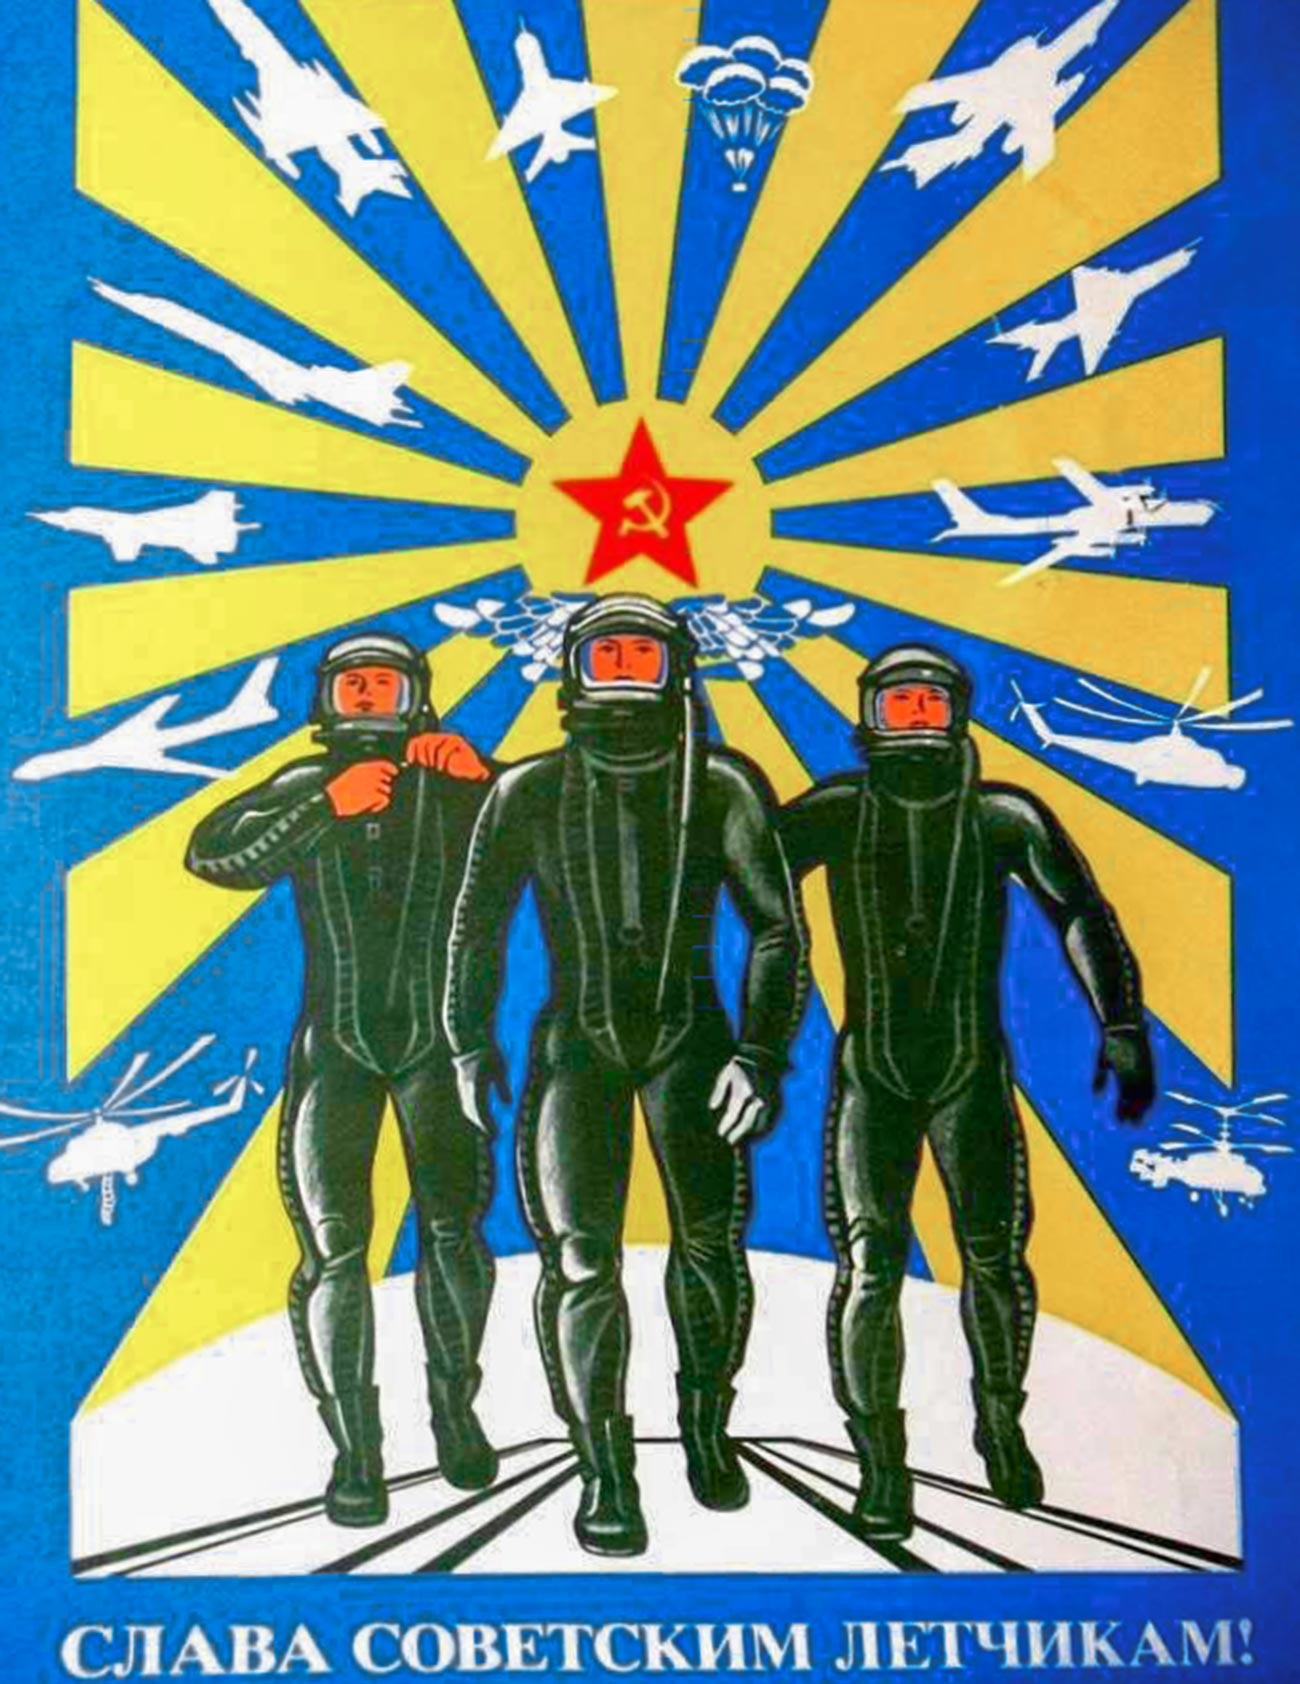 « Gloire aux pilotes soviétiques ! »